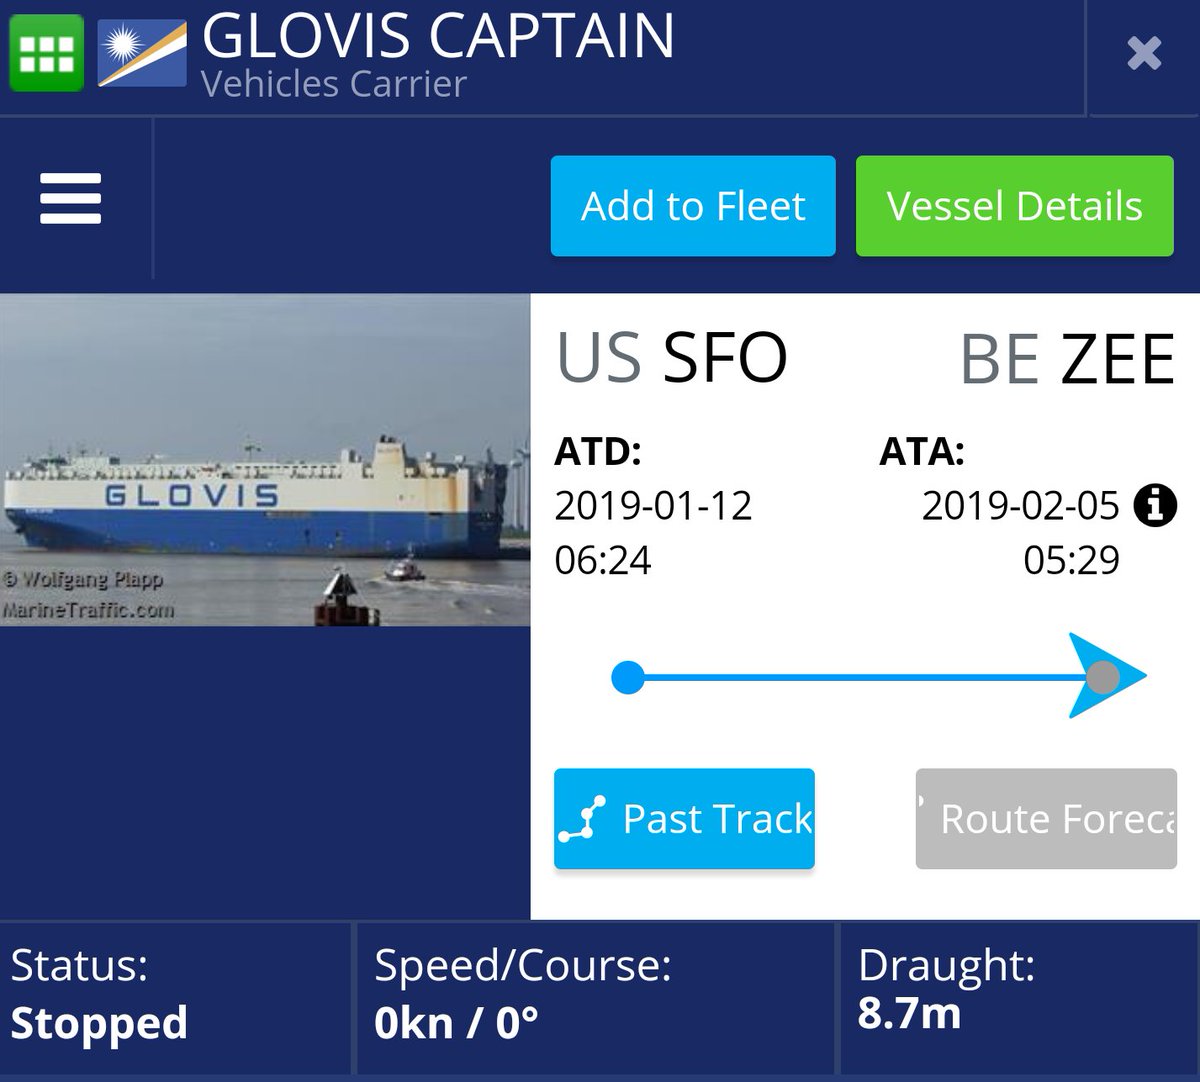 Glovis Captain reaches Port of Zeebrugge, Belgium carrying Tesla Model 3 EVs